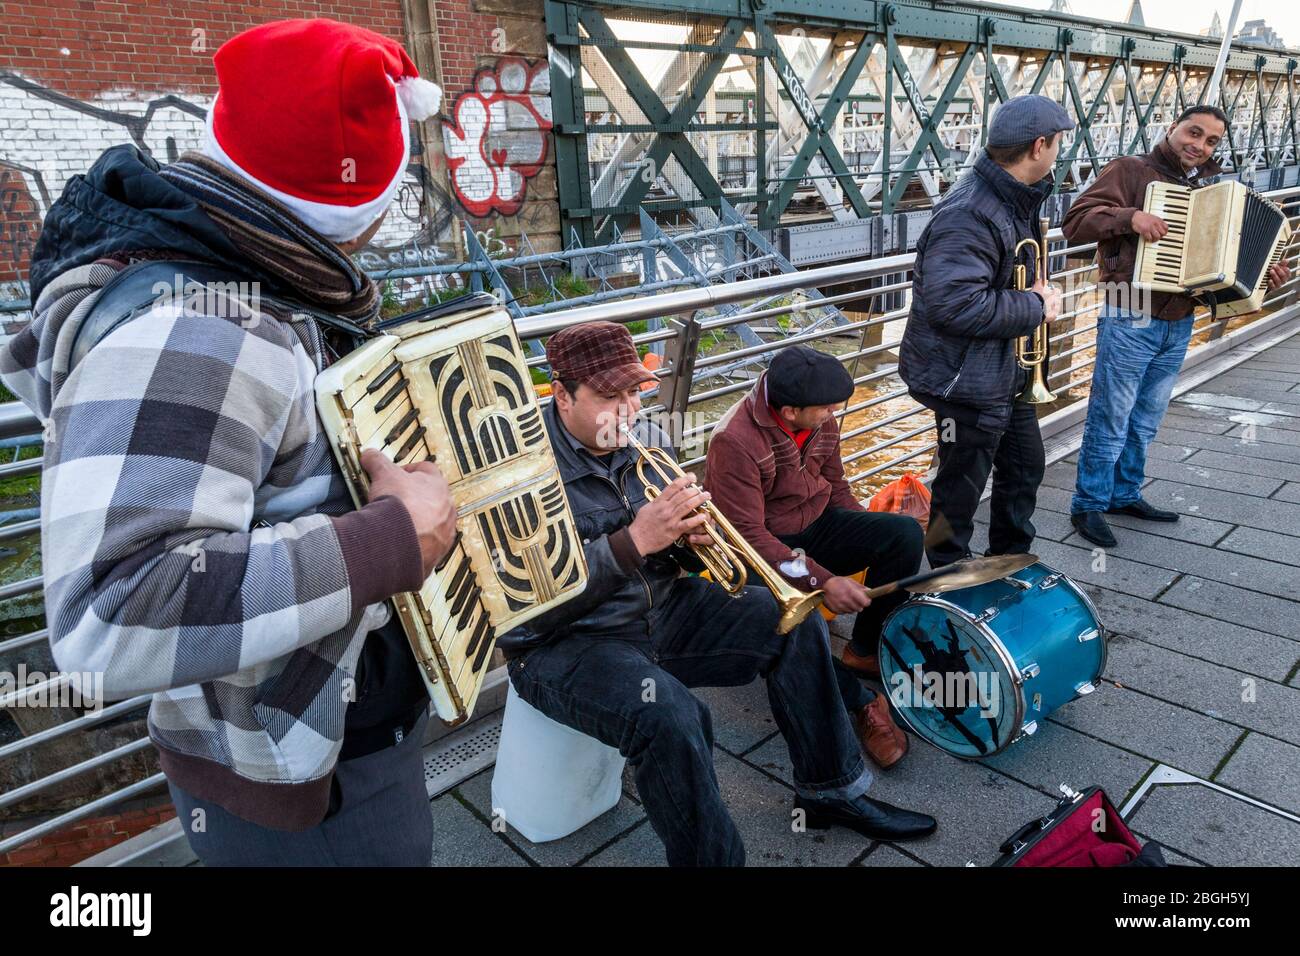 Gruppo di musicisti che si esibiscono all'esterno. Buskers suona musica su fisarmoniche, trombe e un tamburo su un ponte, Londra, Inghilterra, Regno Unito Foto Stock